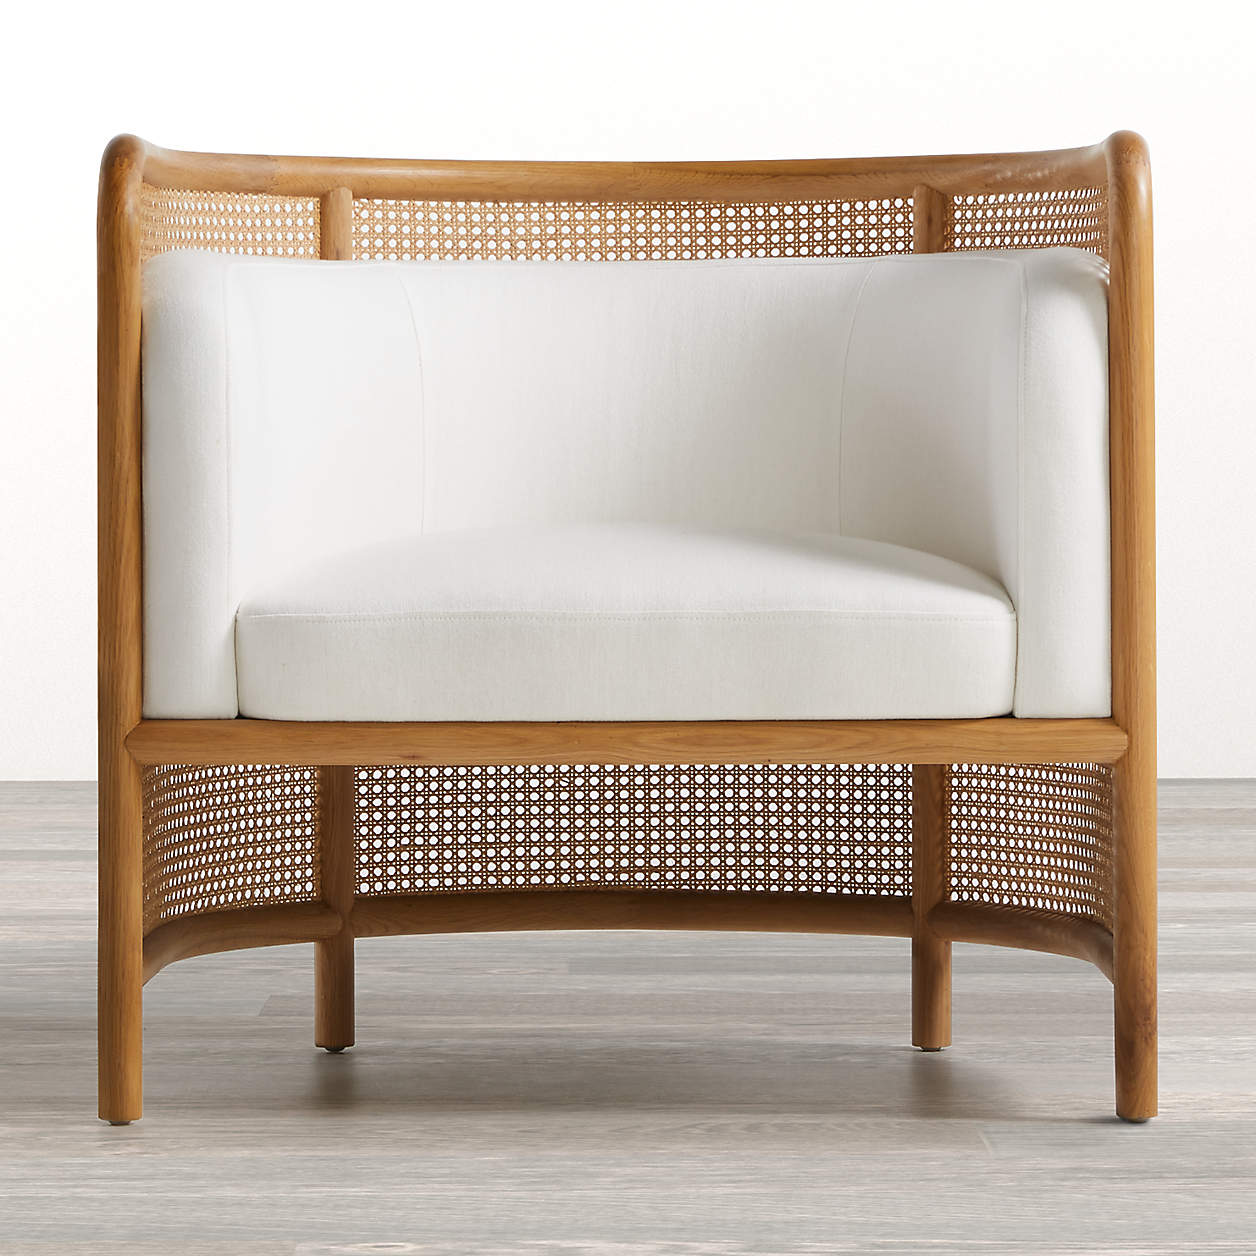 Sierra Lounge Chair - fields chair white image